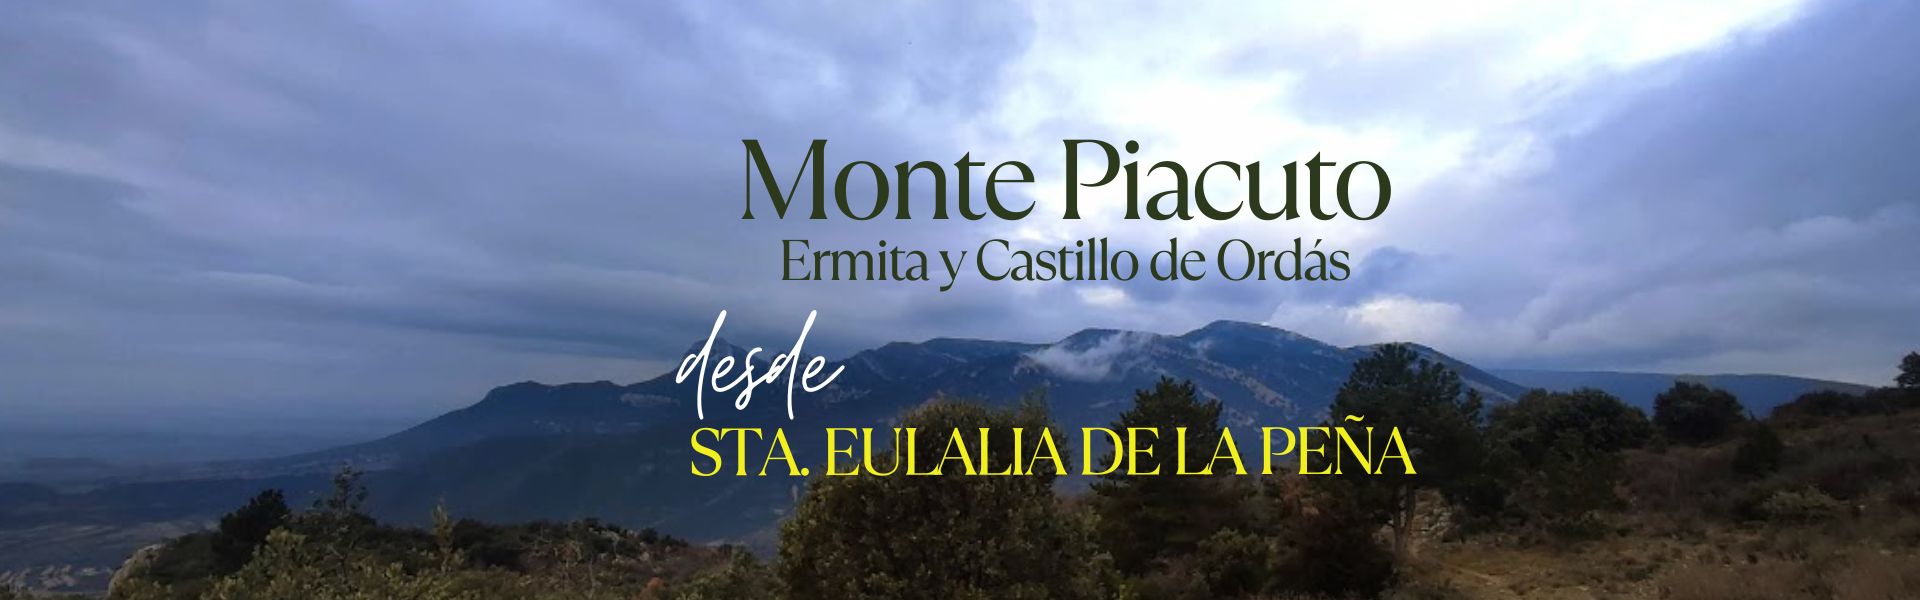 Ermita y Castillo de Ordás – Monte Piacuto